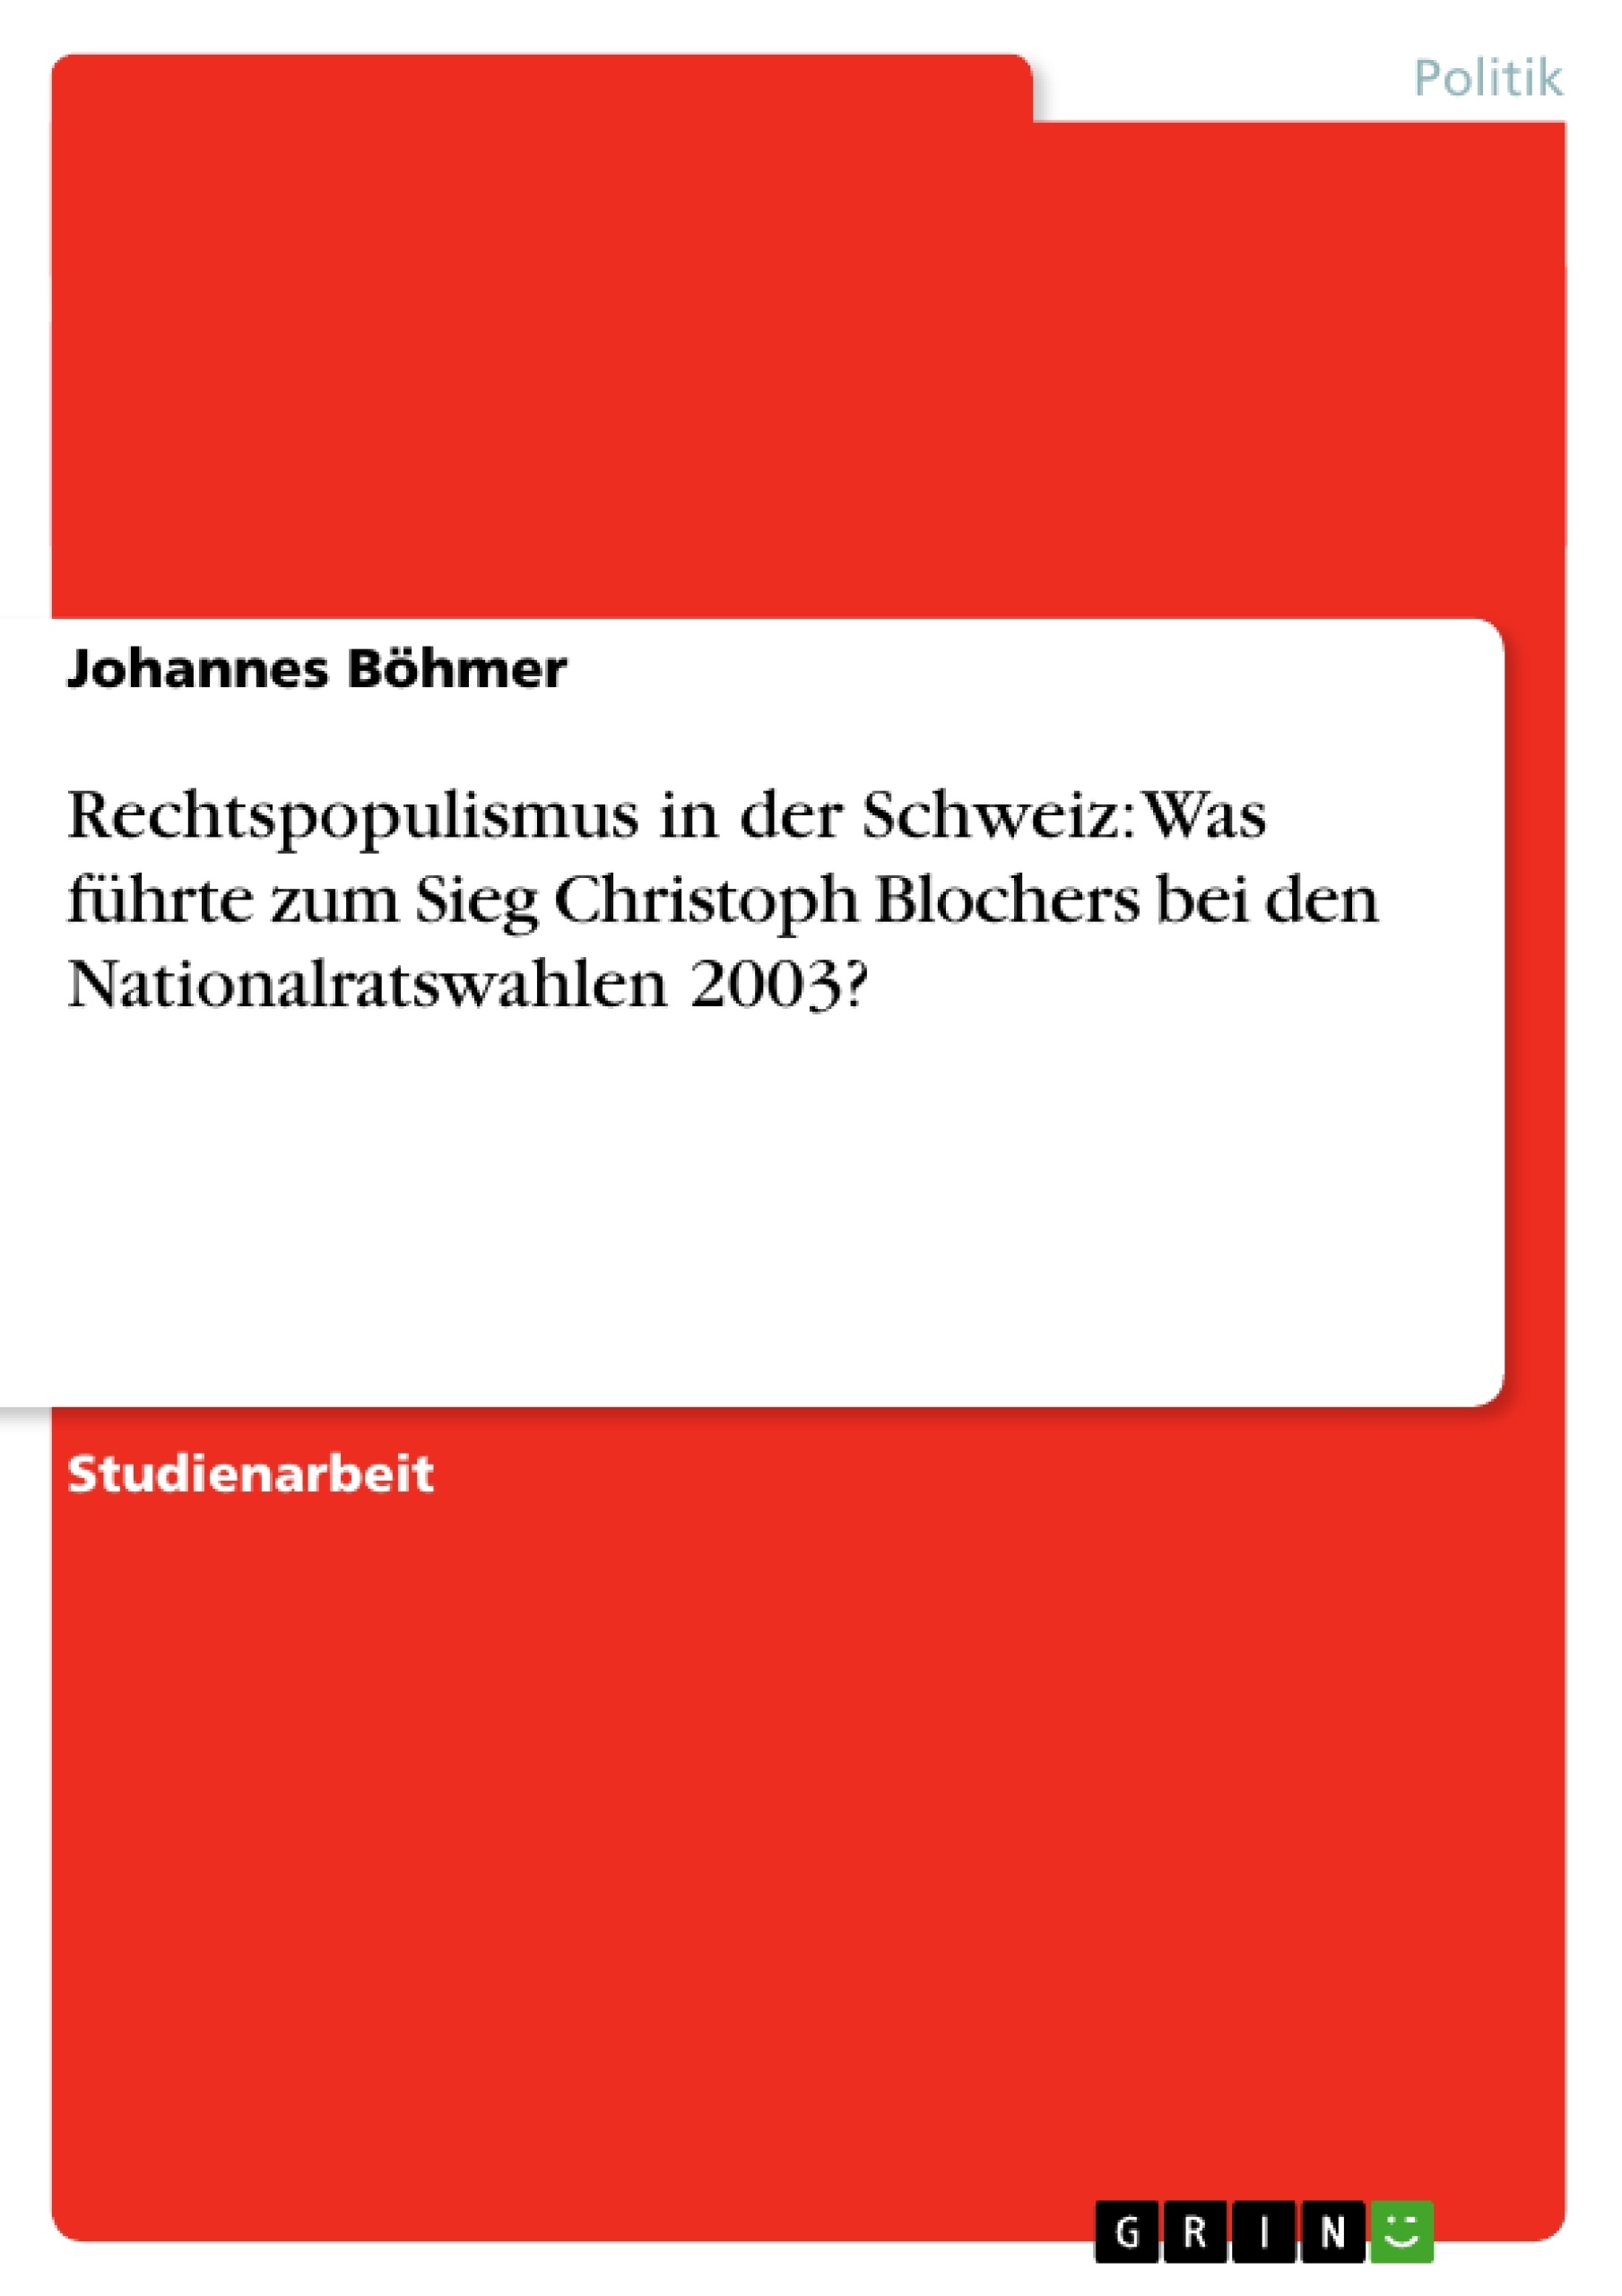 Título: Rechtspopulismus in der Schweiz: Was führte zum Sieg Christoph Blochers bei den Nationalratswahlen 2003?